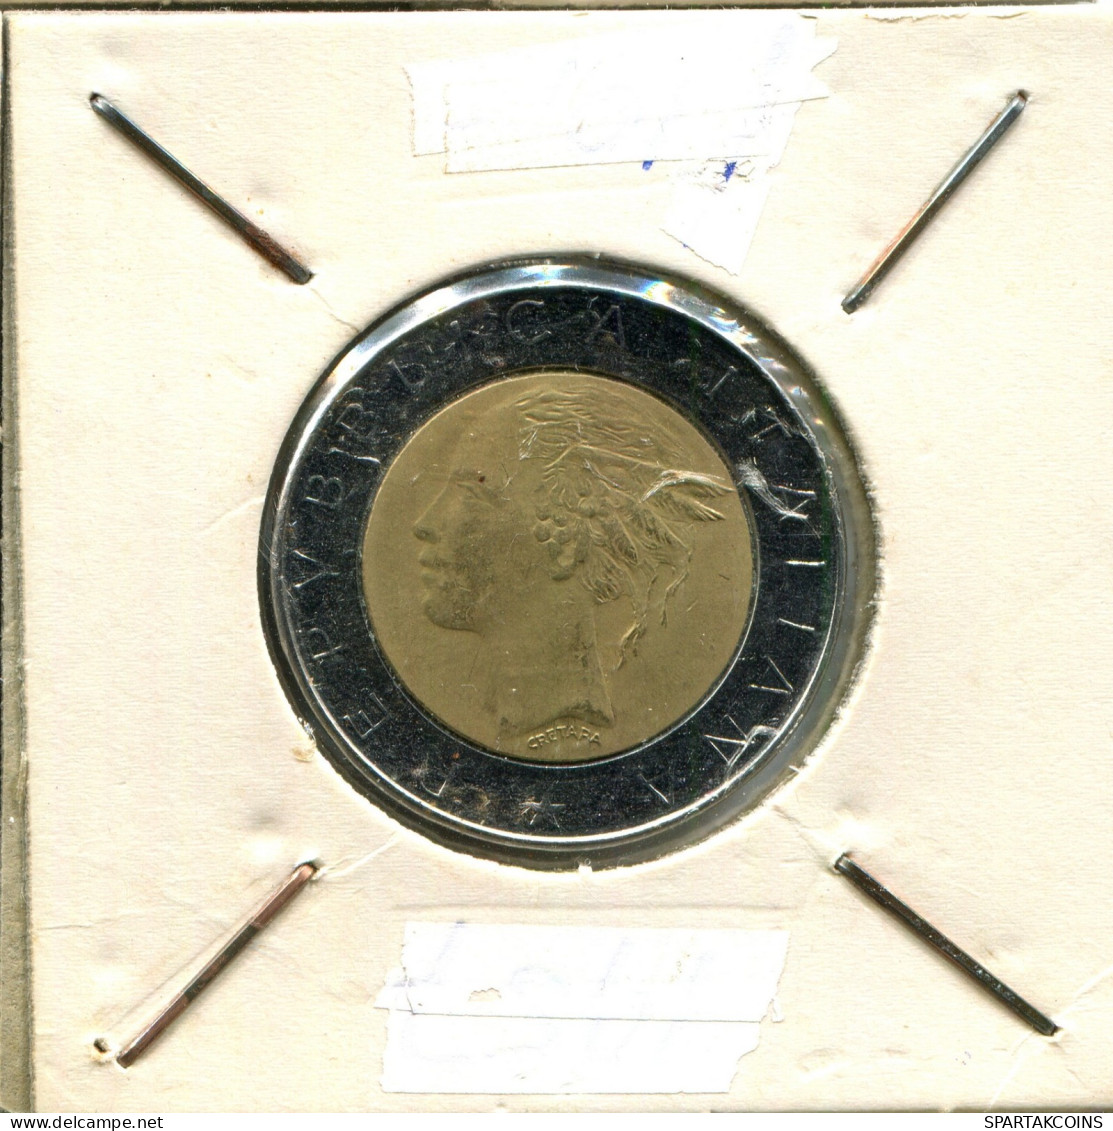 500 LIRE 1983 ITALIA ITALY Moneda BIMETALLIC #AW641.E.A - 500 Lire